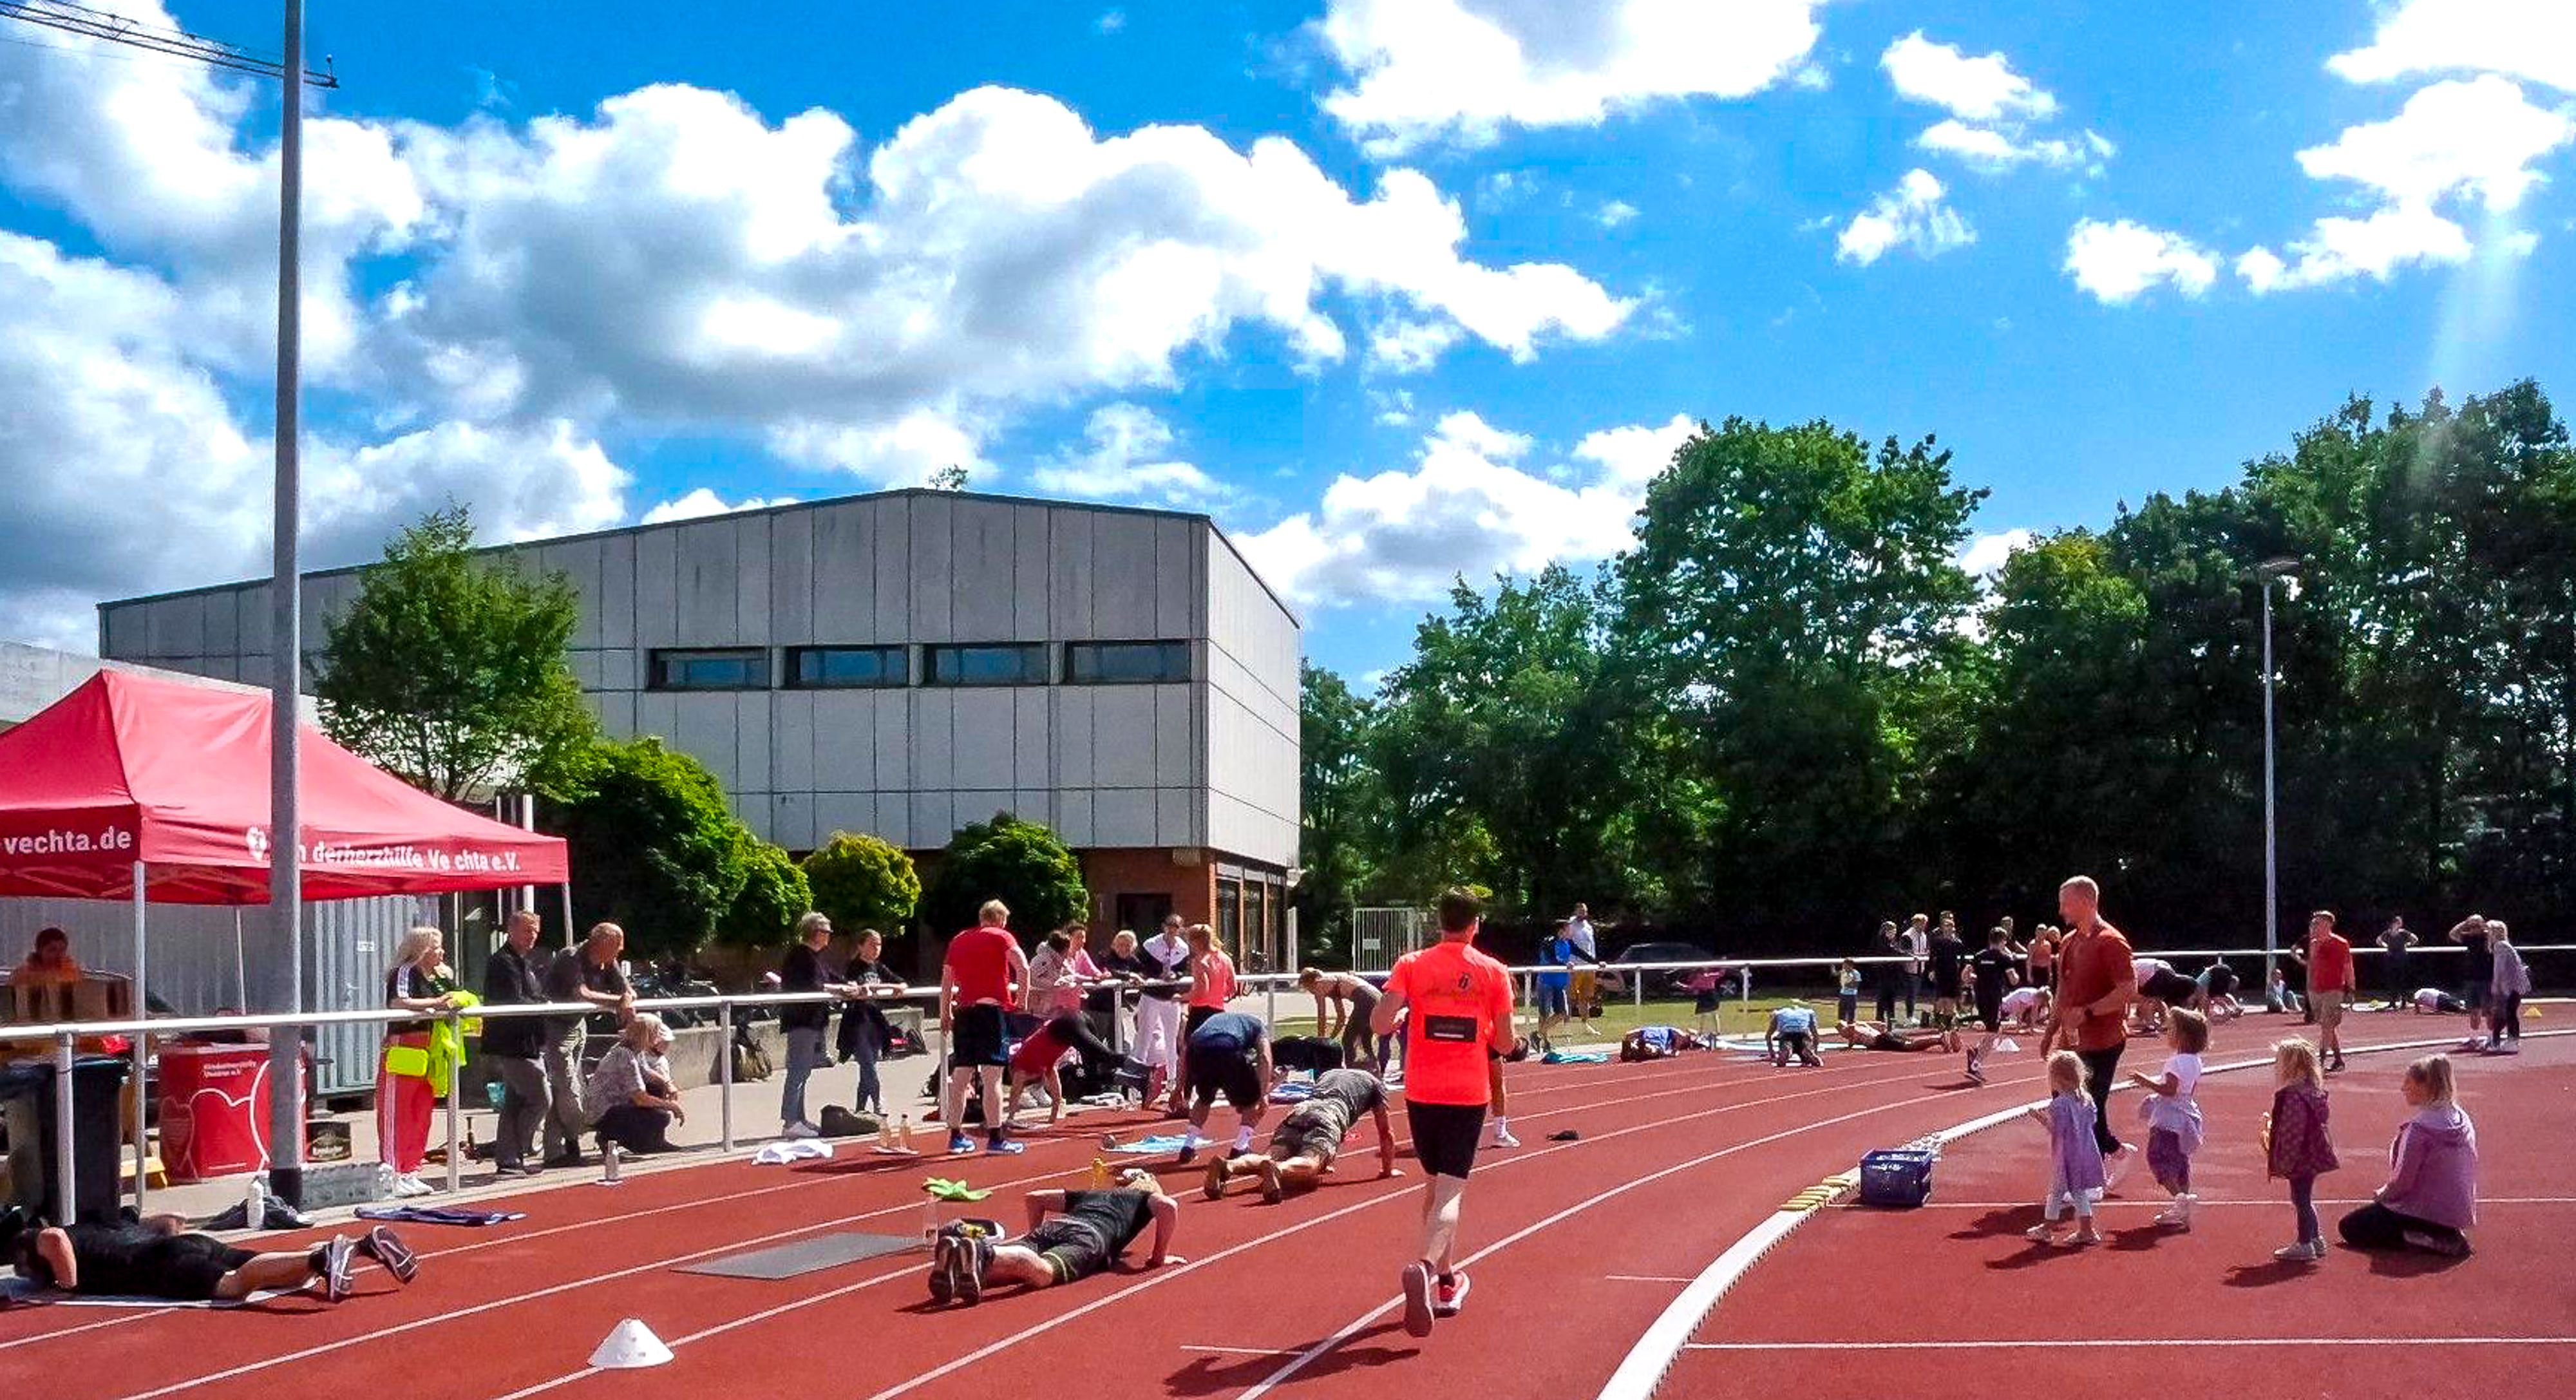 Rückblick: Das Workout auf dem Sportplatz der Universität Vechta hat es in sich. 60 Teilnehmer waren im vergangenen Jahr dabei. Dieses Mal sollen es mehr werden. Foto: Dase